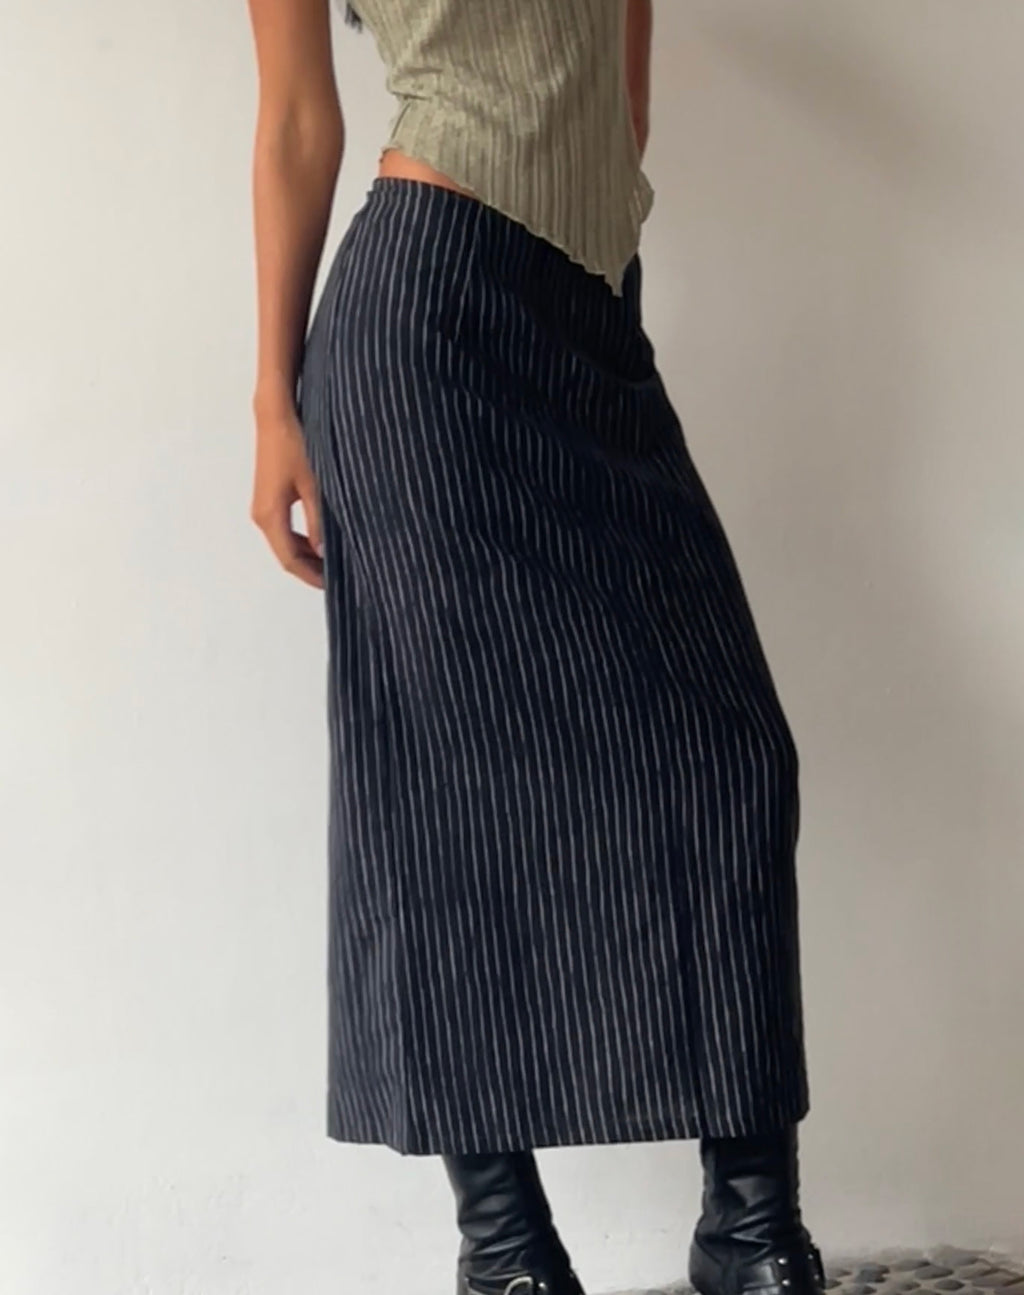 MOTEL X JACQUIE Duende Midi Skirt in Sketchy Stripe Black